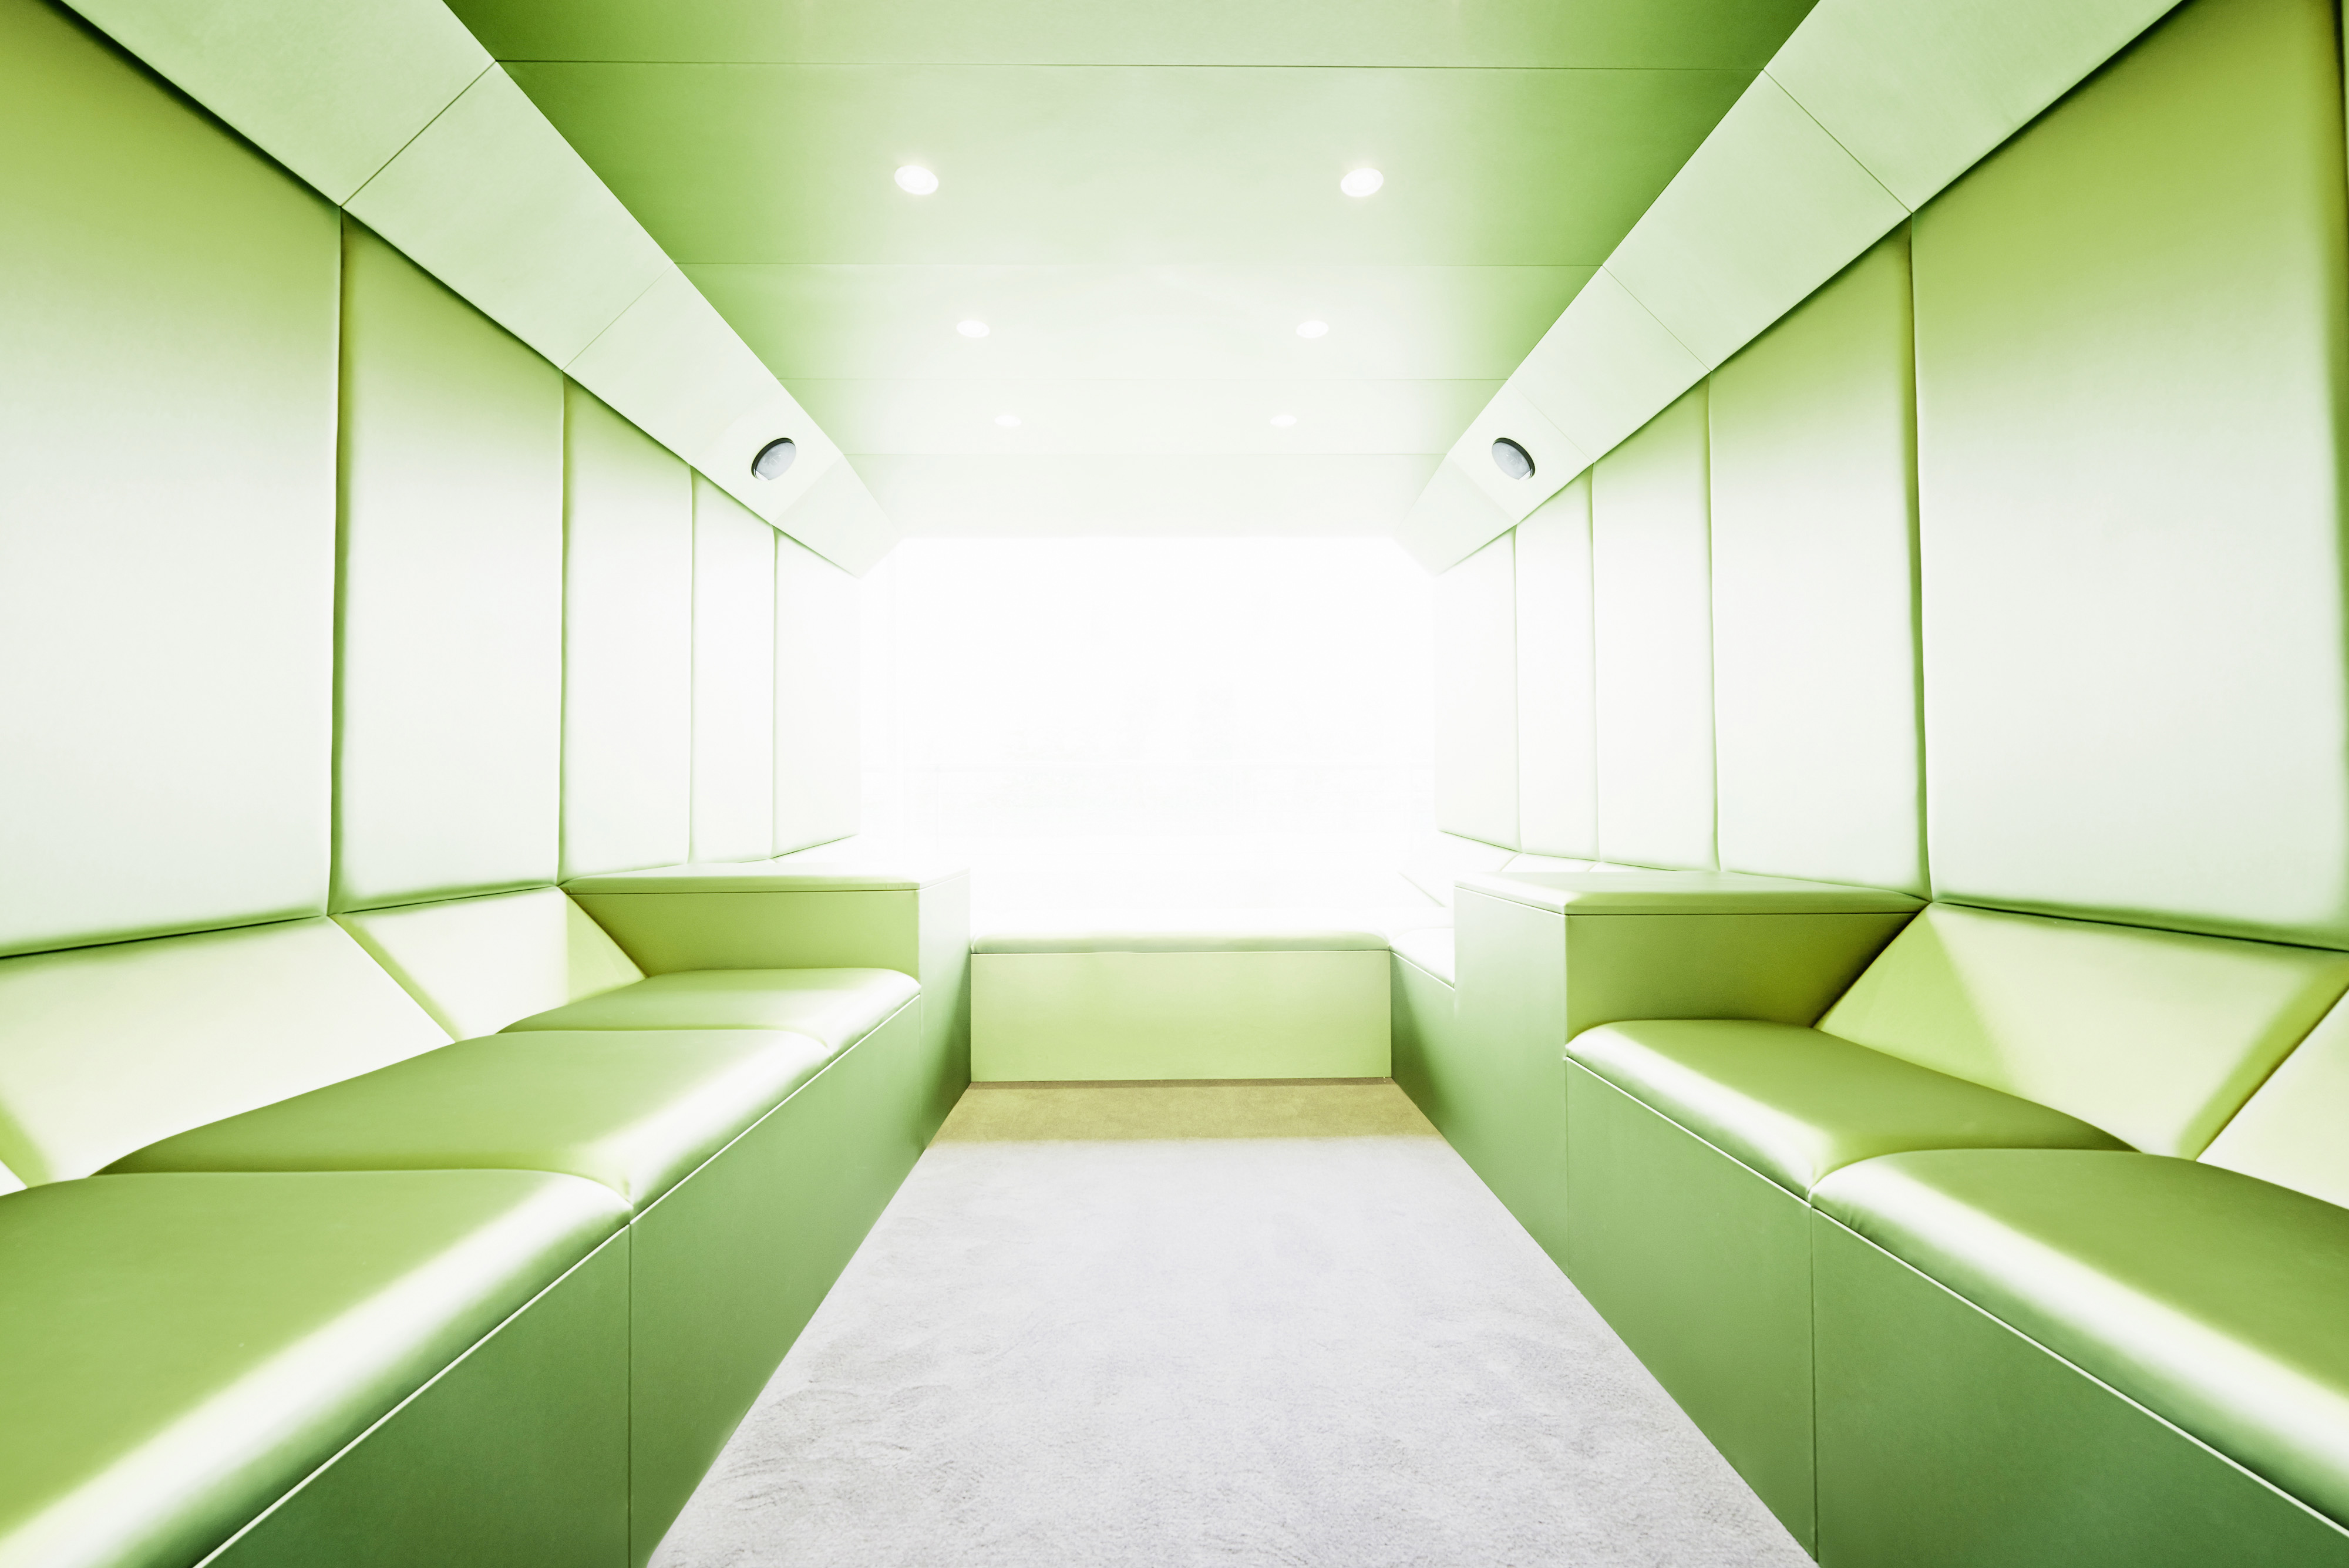 休息室内部包裹着石灰绿色的皮革缓冲垫，在进入空间时产生一种淡淡的色彩。